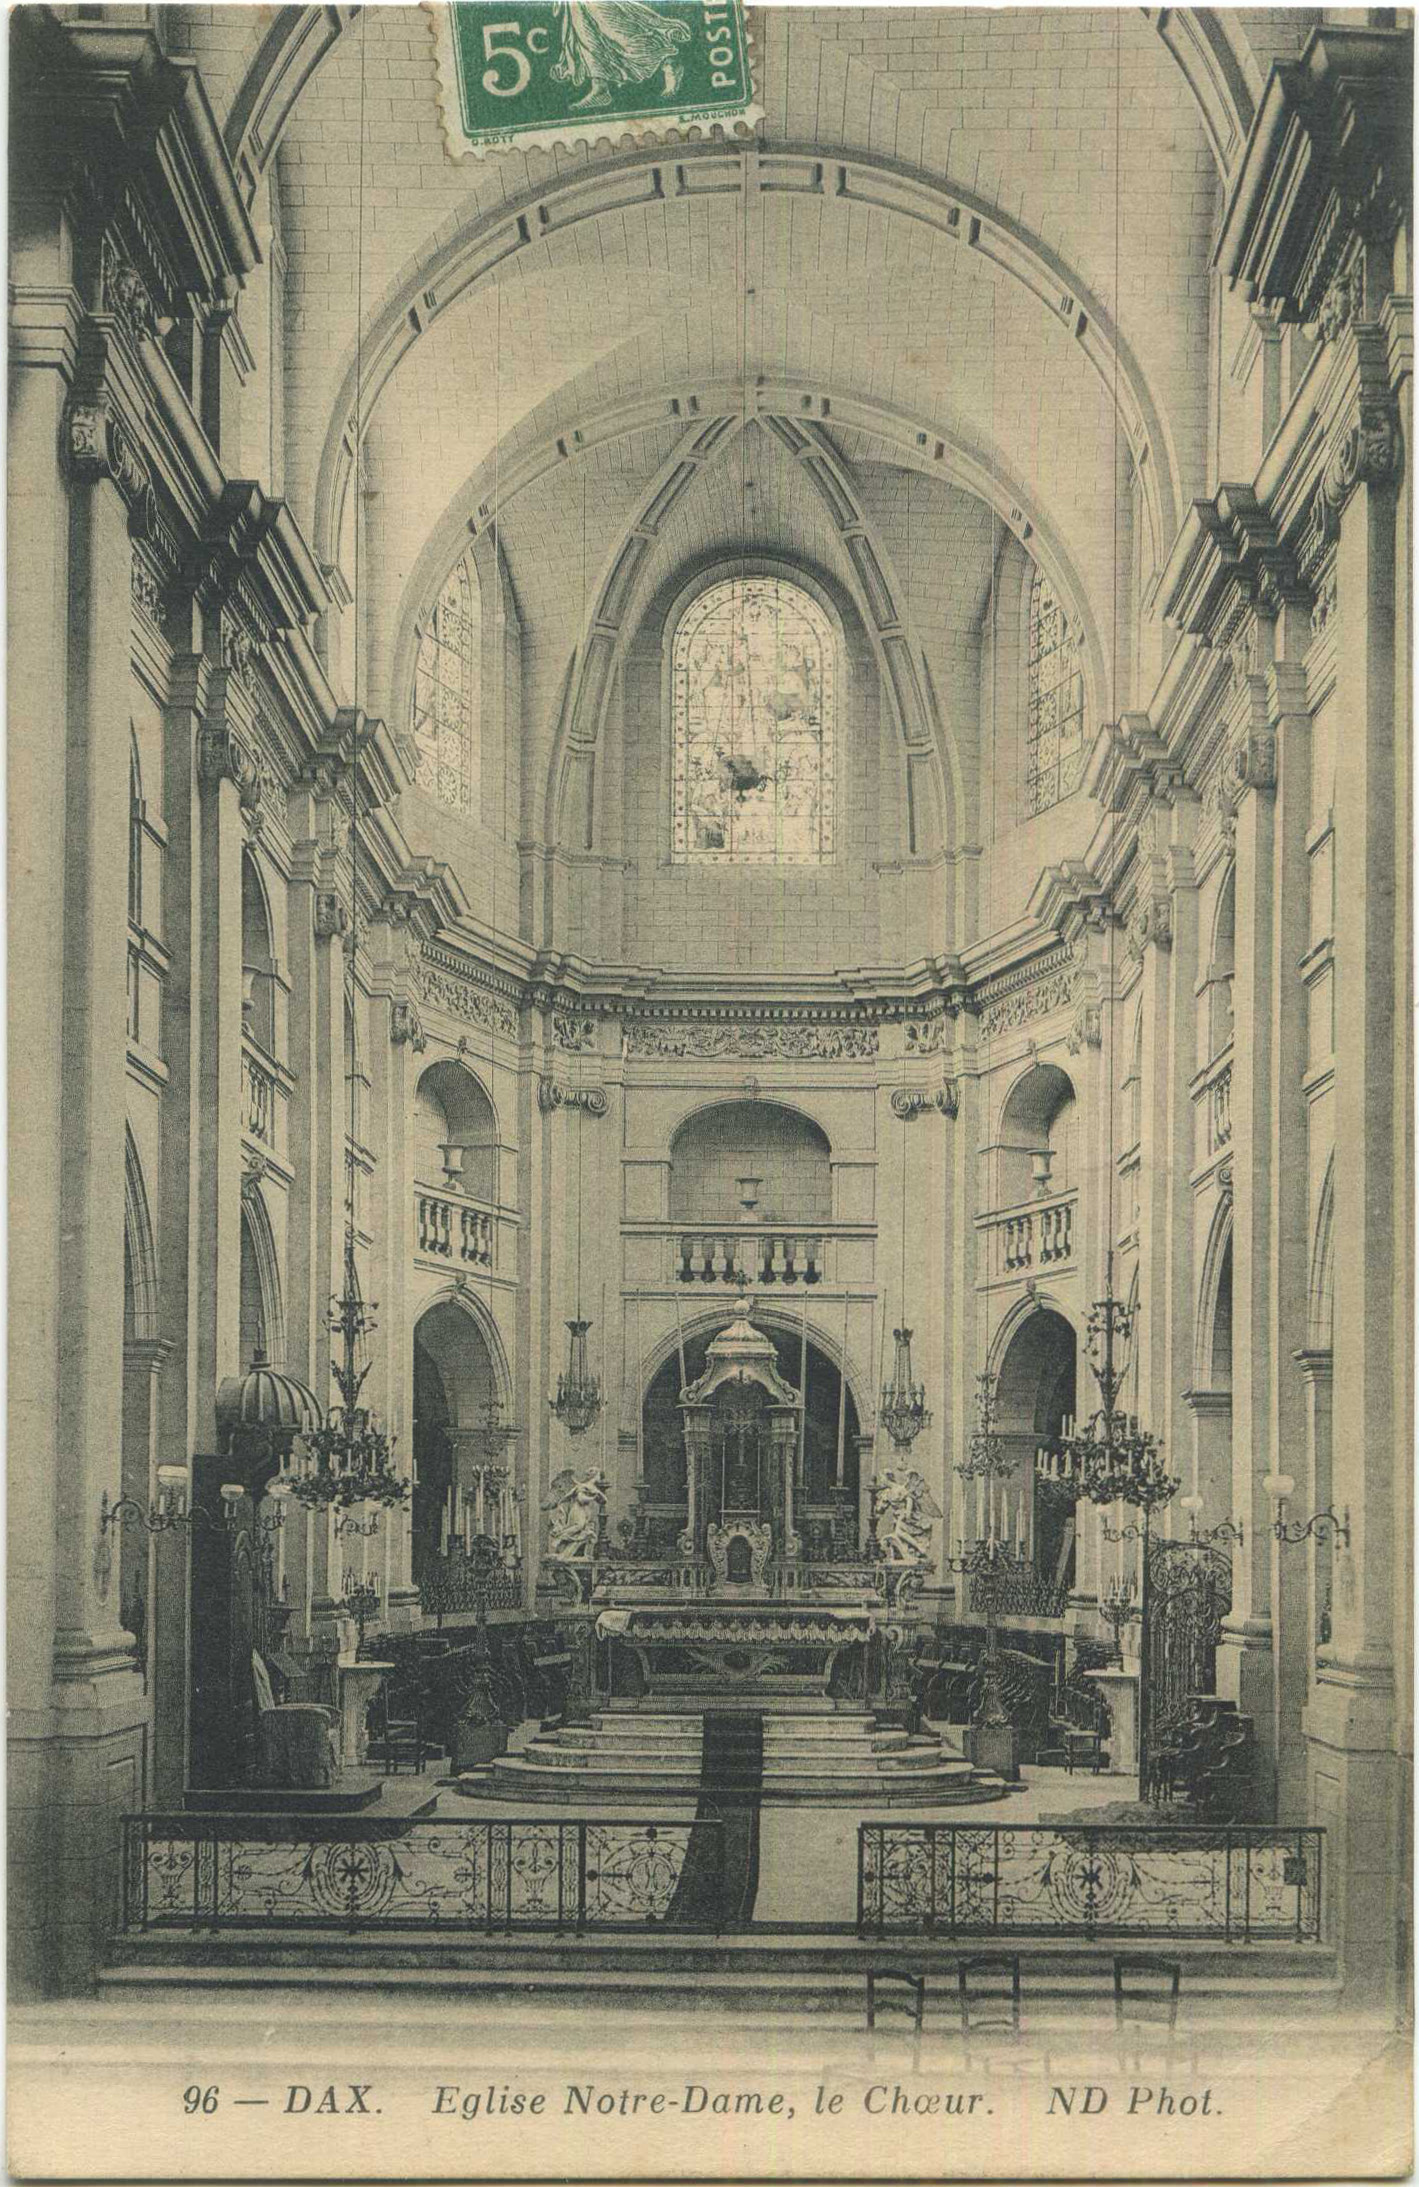 Dax - Eglise Notre-Dame, le Choeur.